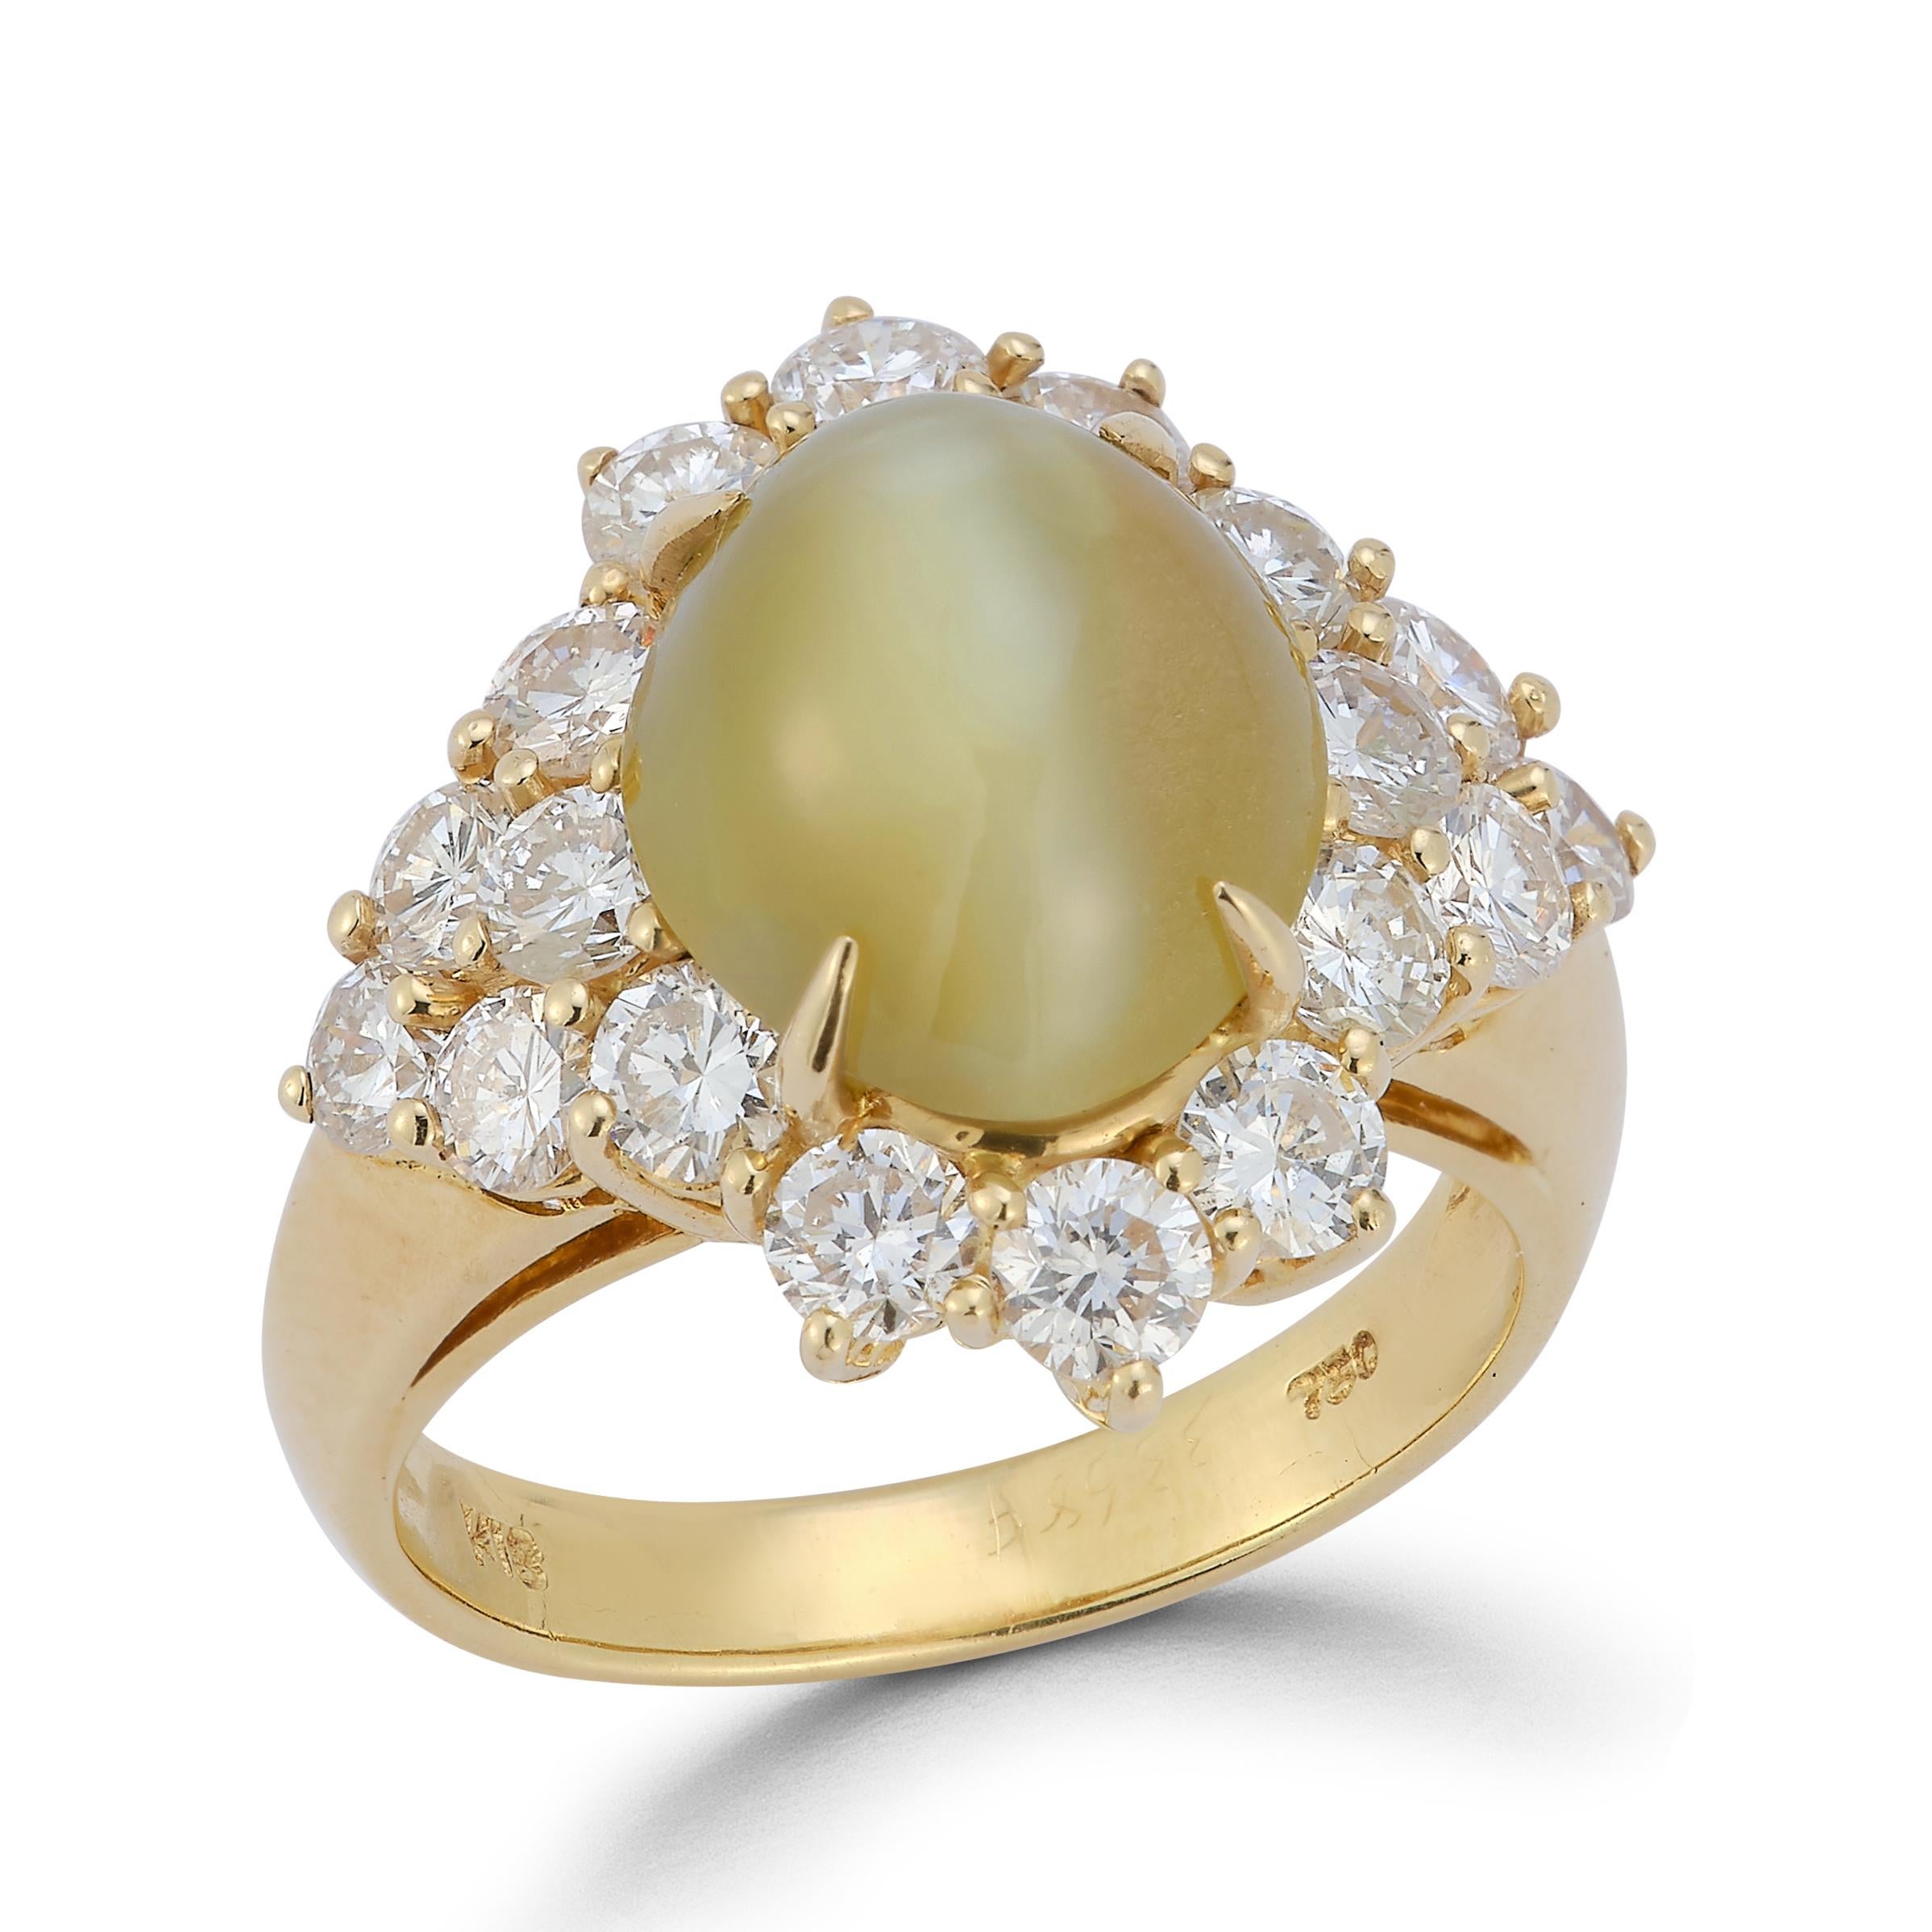 Bague oeil de chat cabochon en chrysobéryl et diamant 
or jaune 18K 
Taille de l'anneau : 6.75
Redimensionnable gratuitement 
